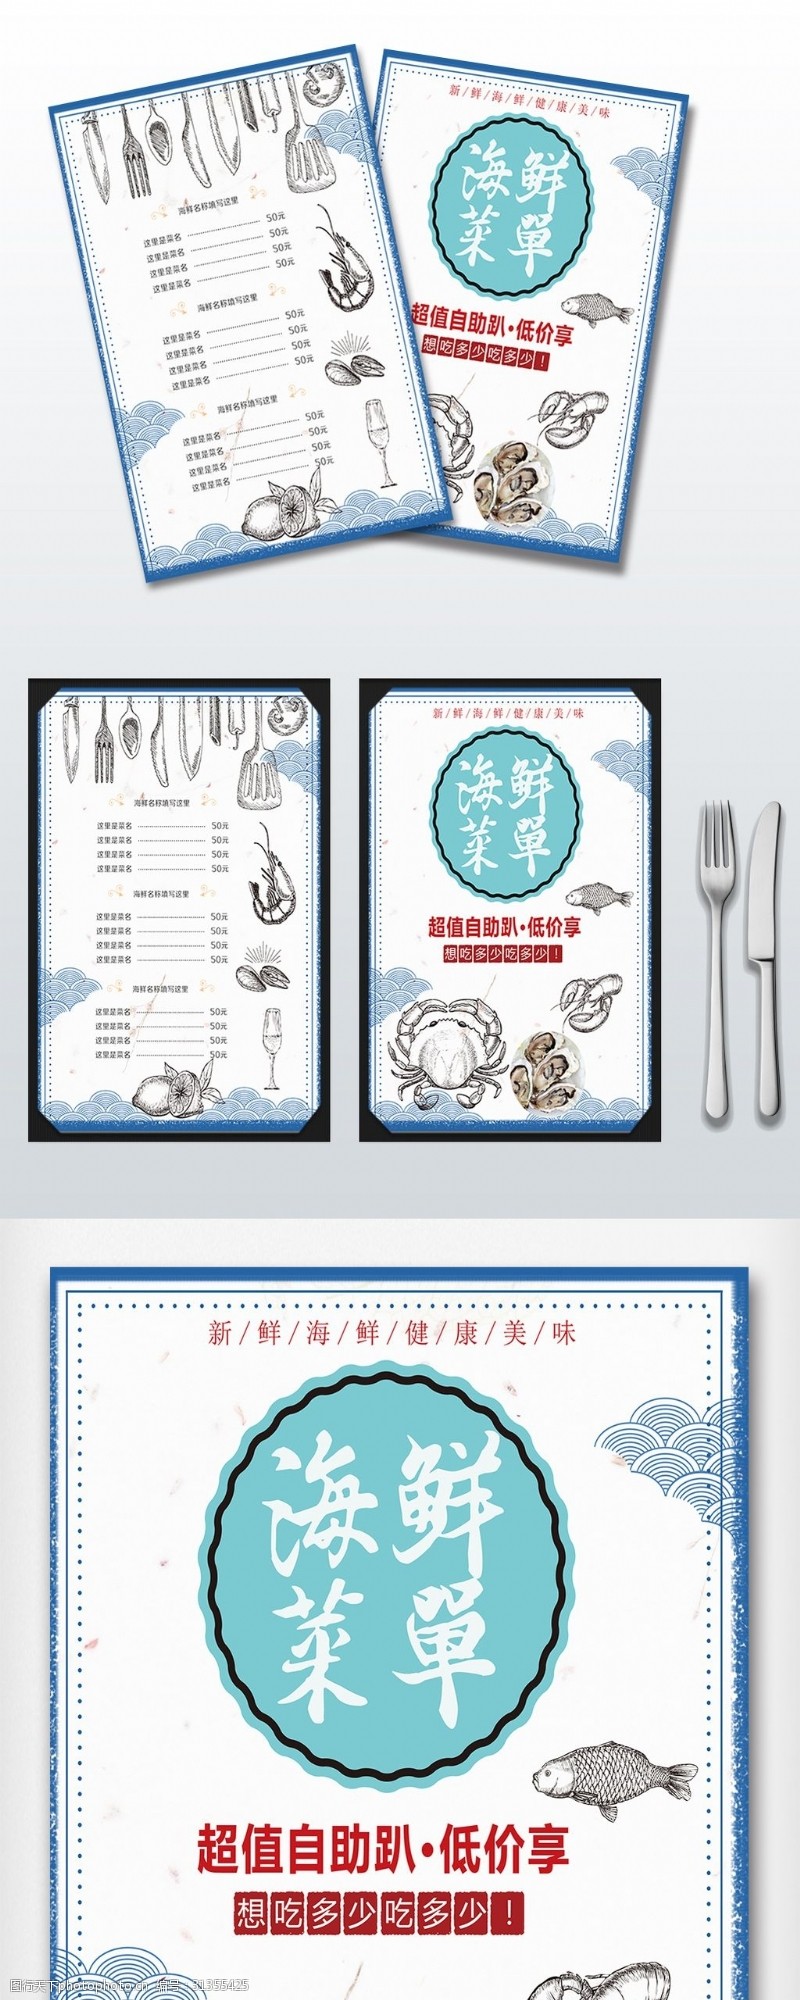 菜单模板创意海鲜自助宣传菜单设计模板